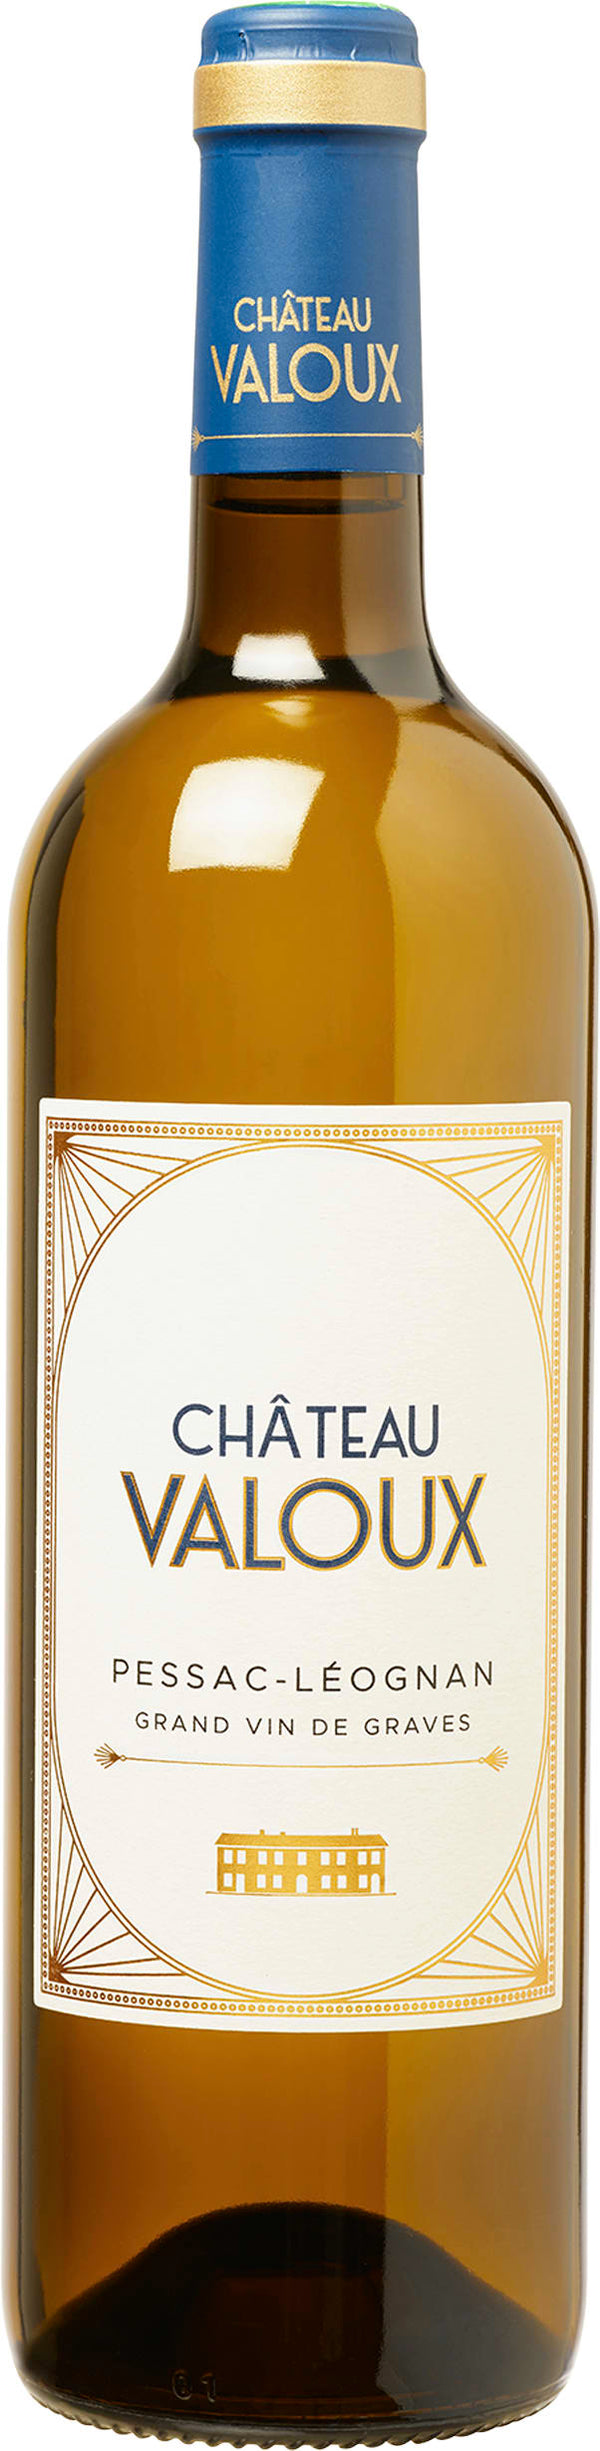 Chateau Valoux Pessac-Leognan 2019 6x75cl - Just Wines 